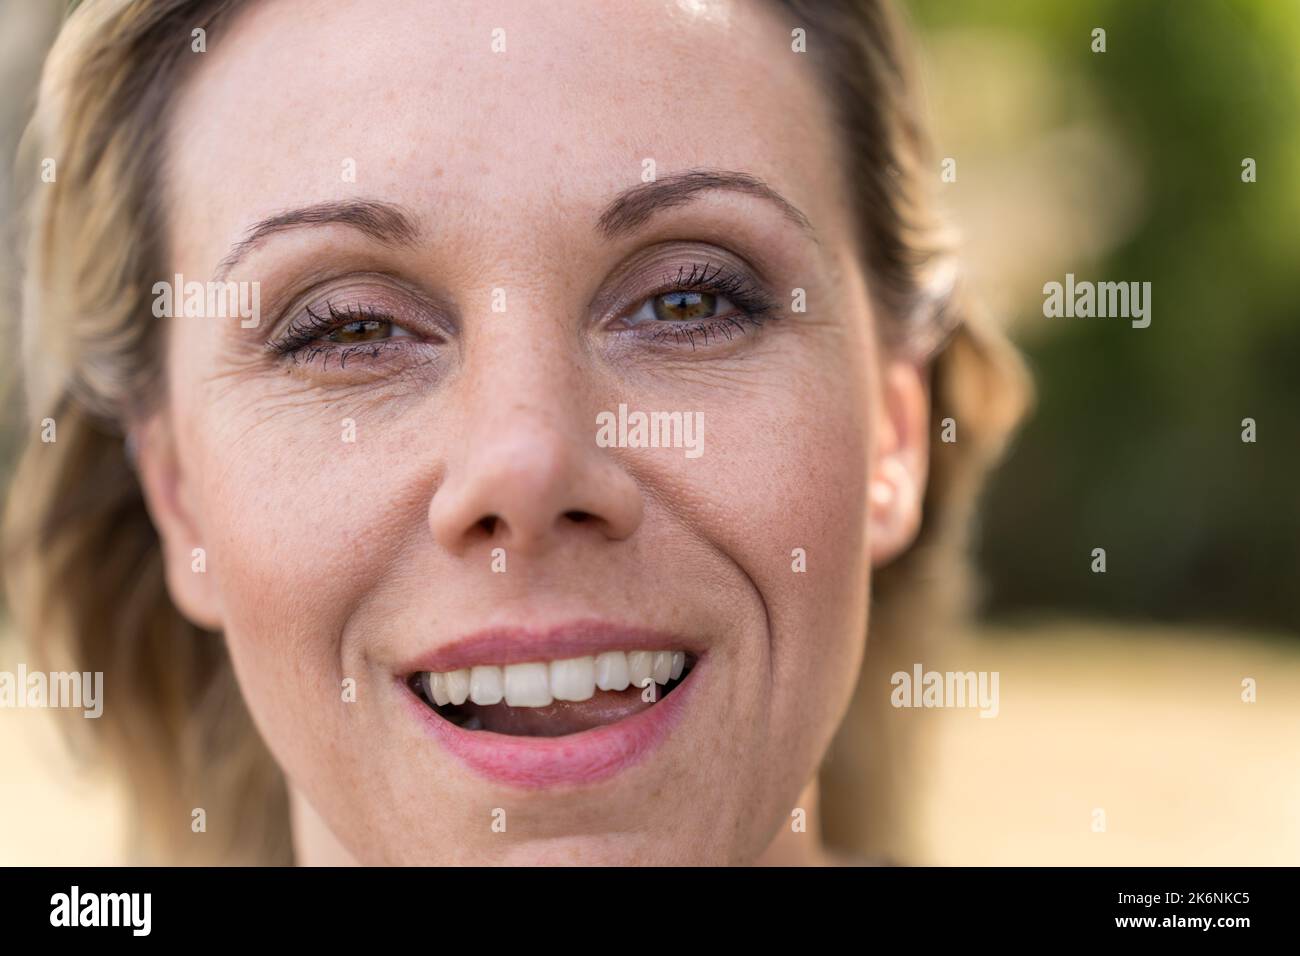 Nahaufnahme des Gesichts einer attraktiven blonden, reifen Frau in den Vierzigern, mit einem schelmischen Lächeln und einem zwinkenden Auge Stockfoto